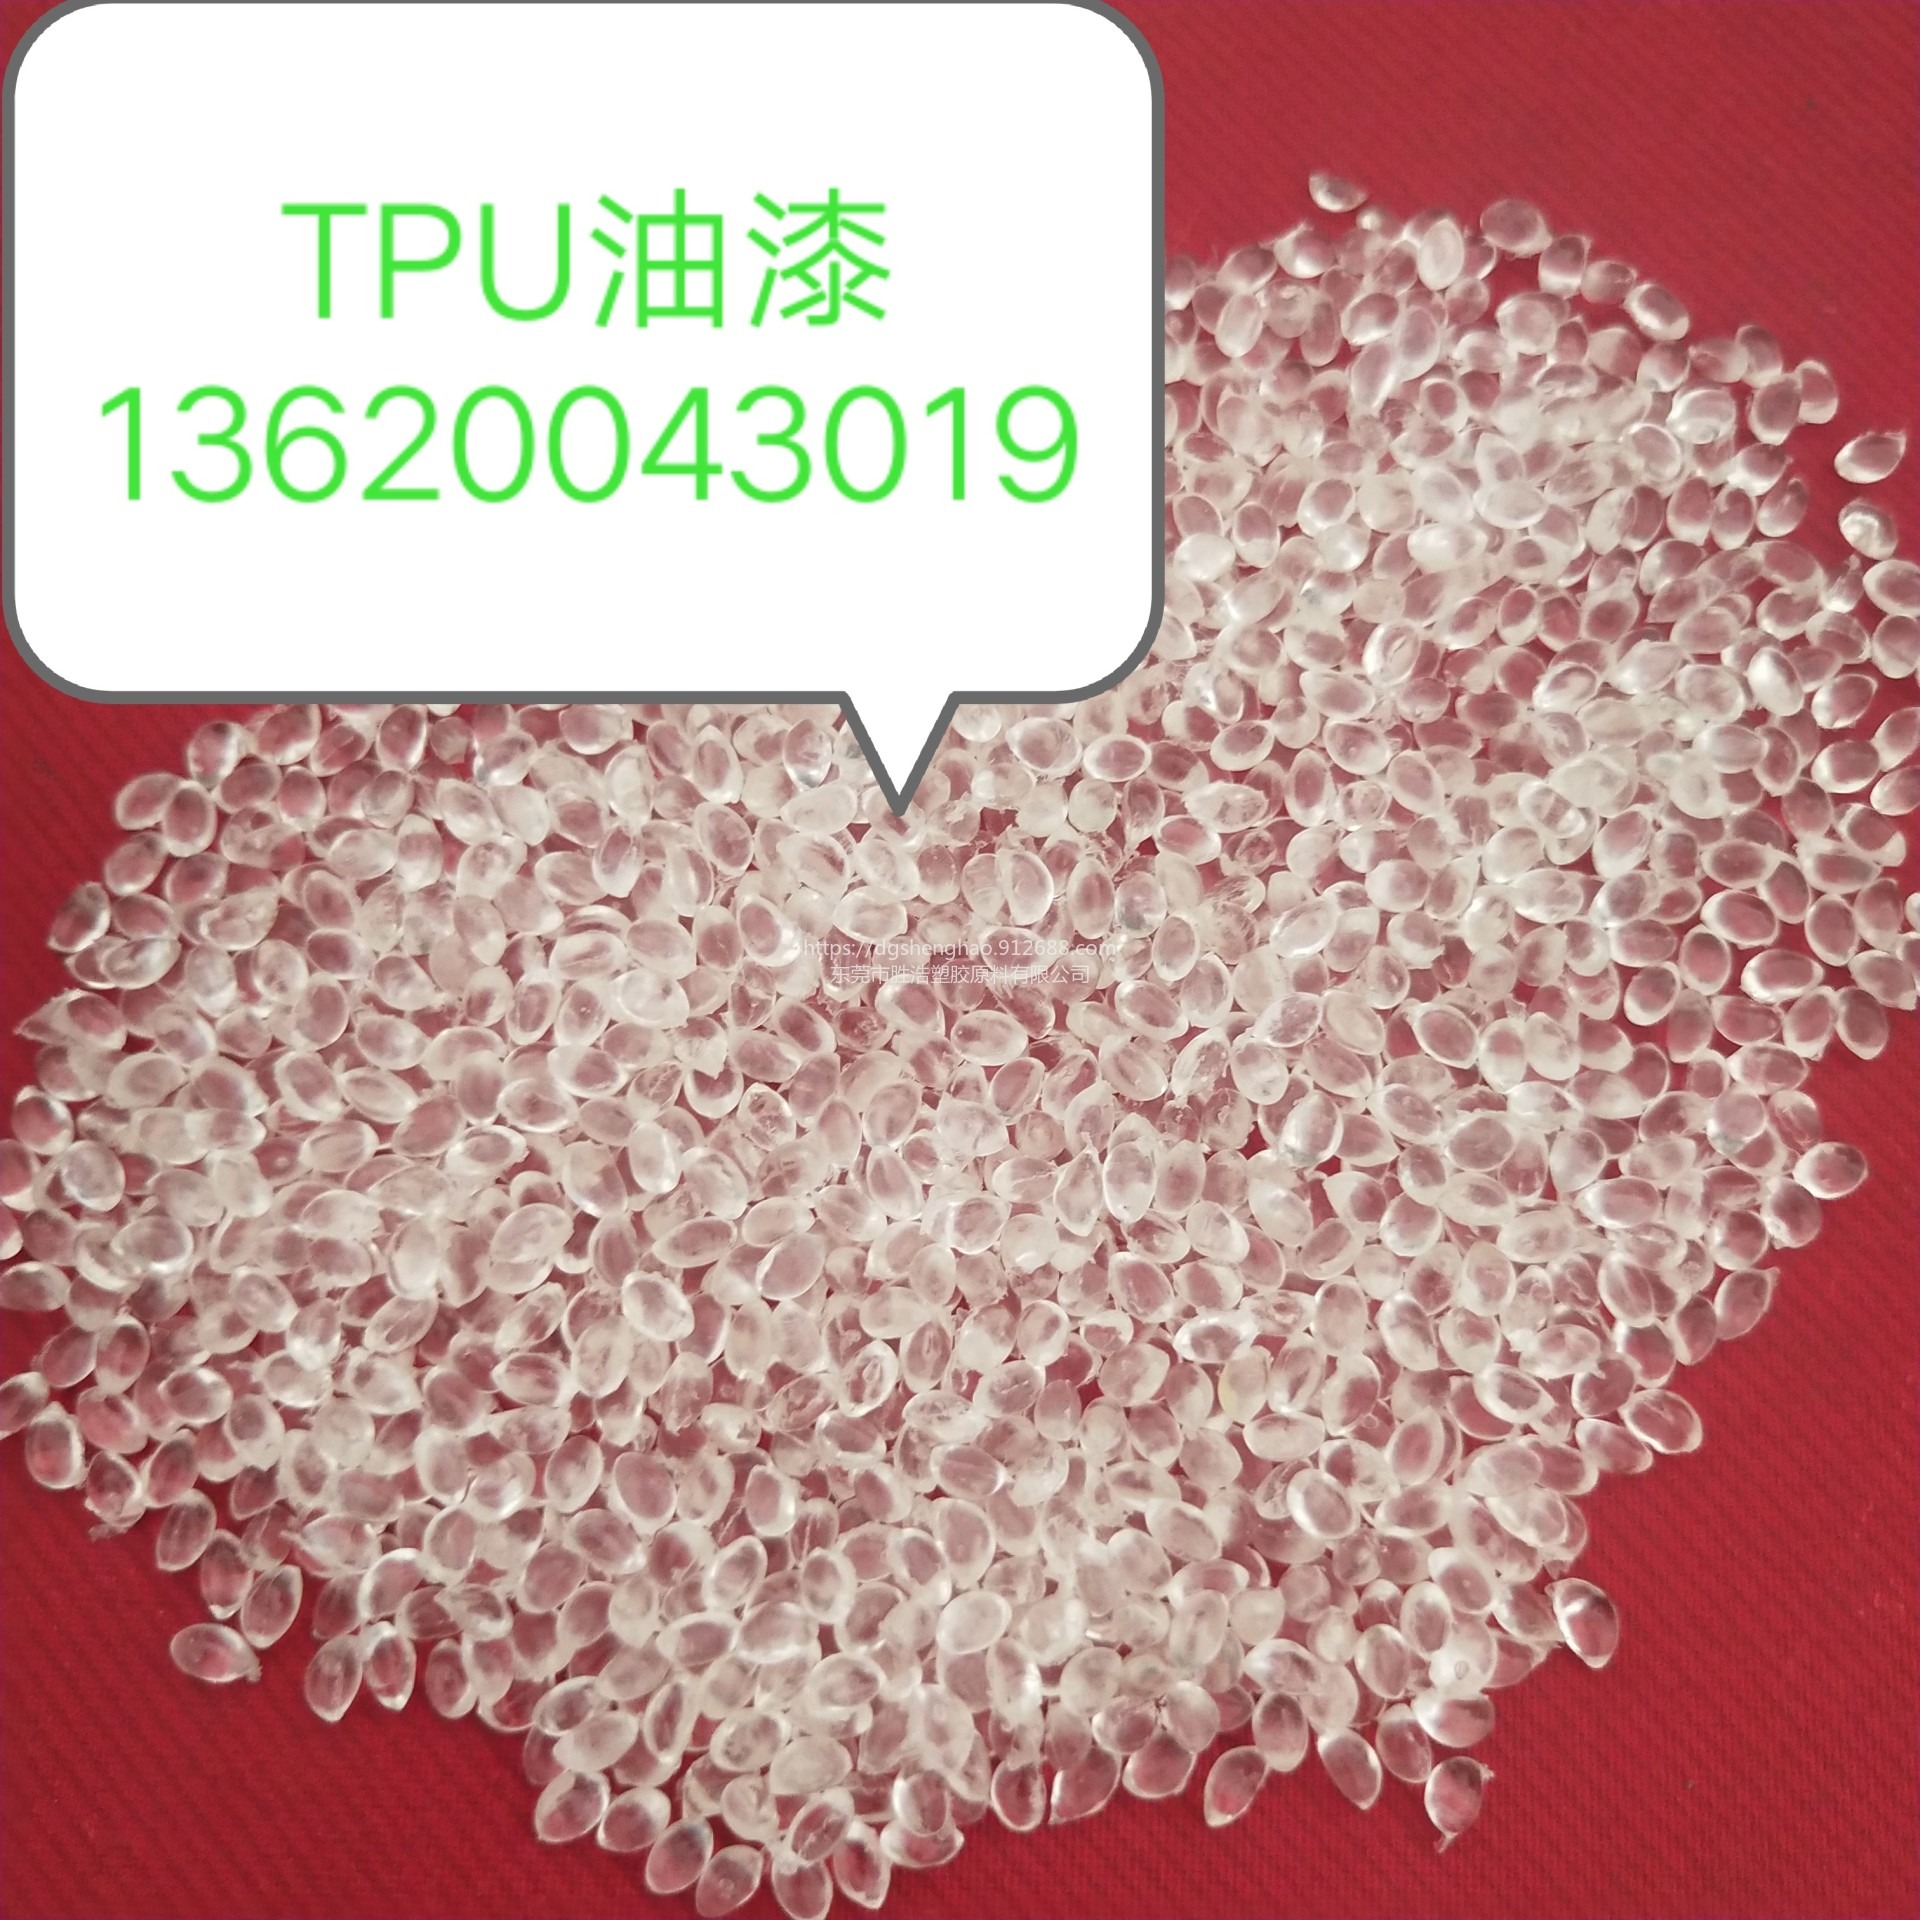 油墨TPU  高透明油墨  高光泽  溶剂型TPU  甲苯可溶TPU  醇类可溶TPU 酯类可溶TPU图片